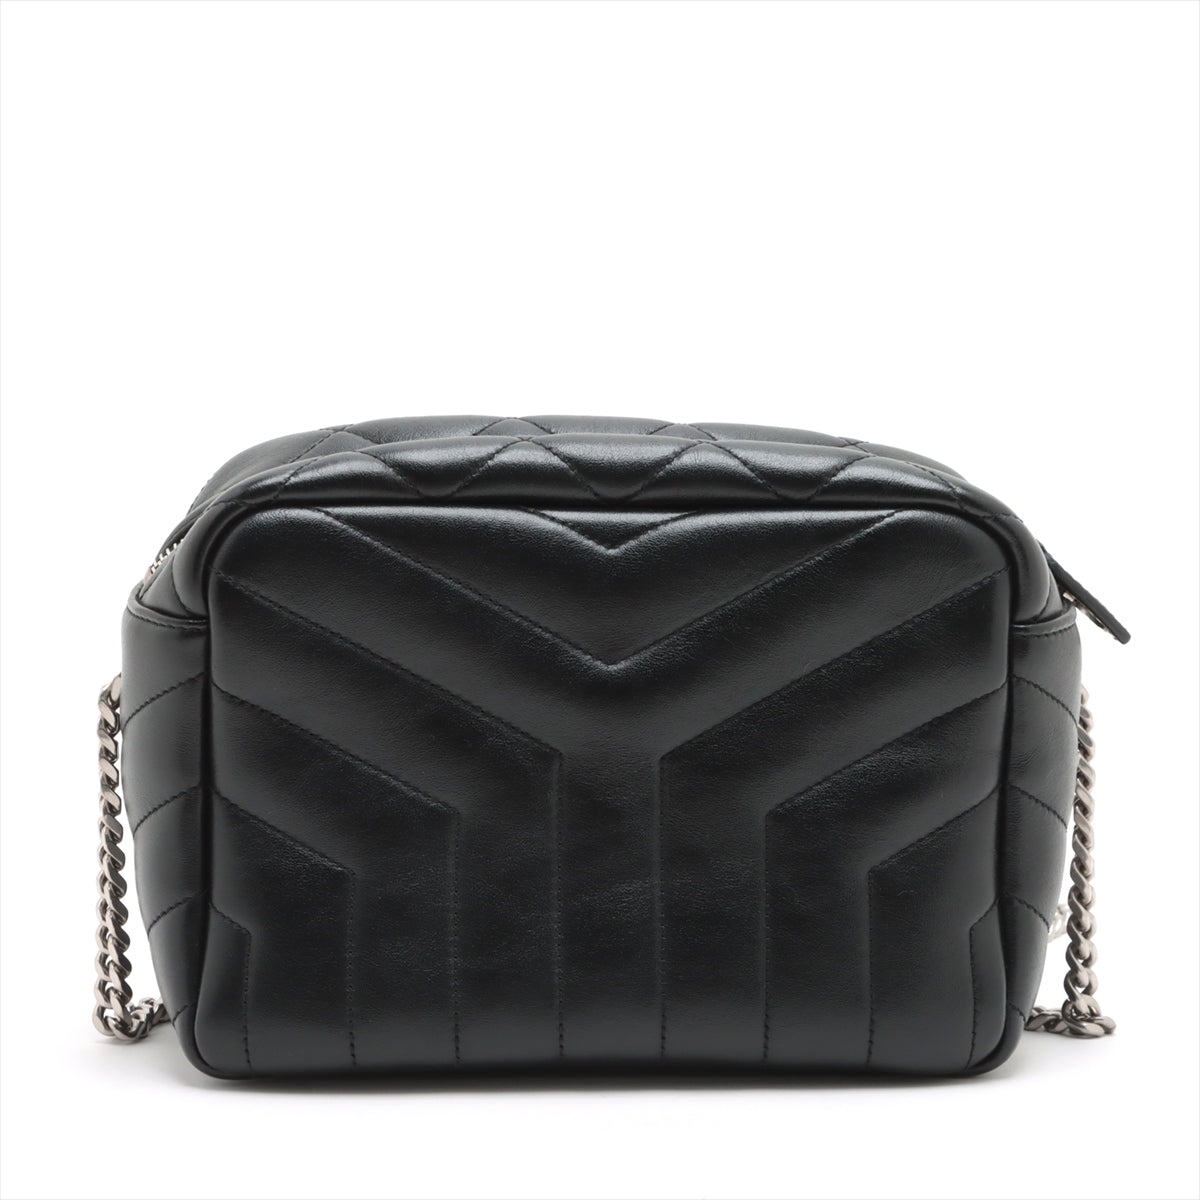 Saint Laurent Paris Lulu Leather Chain shoulder bag Black 574102